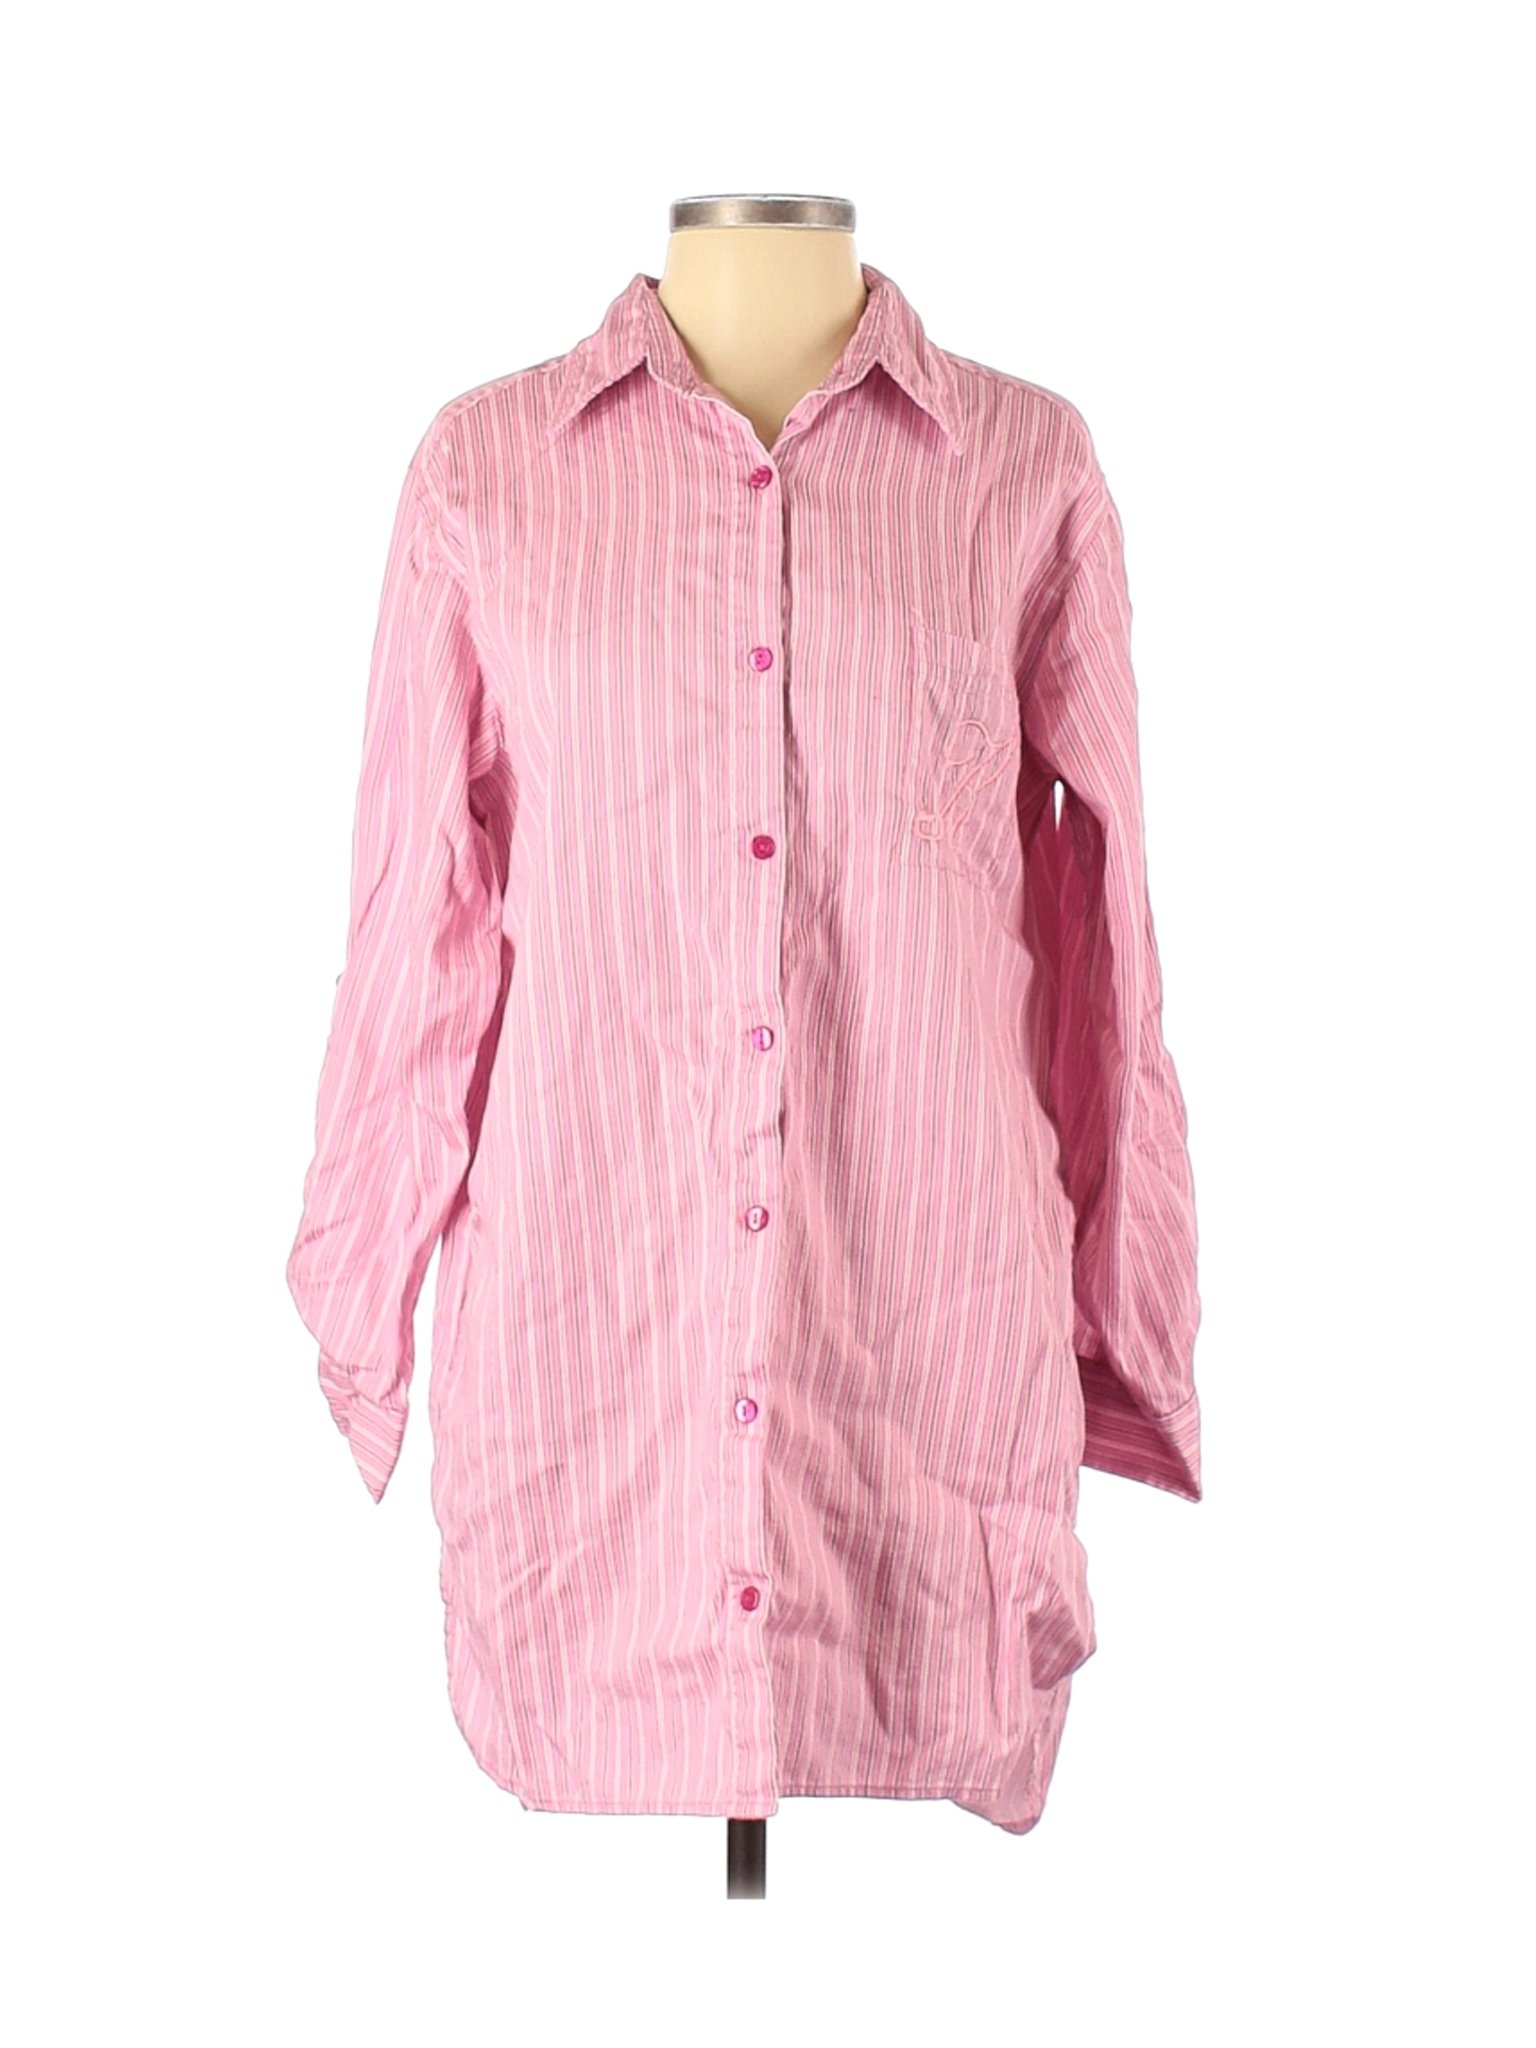 Assorted Brands Women Pink Long Sleeve Button-Down Shirt S | eBay